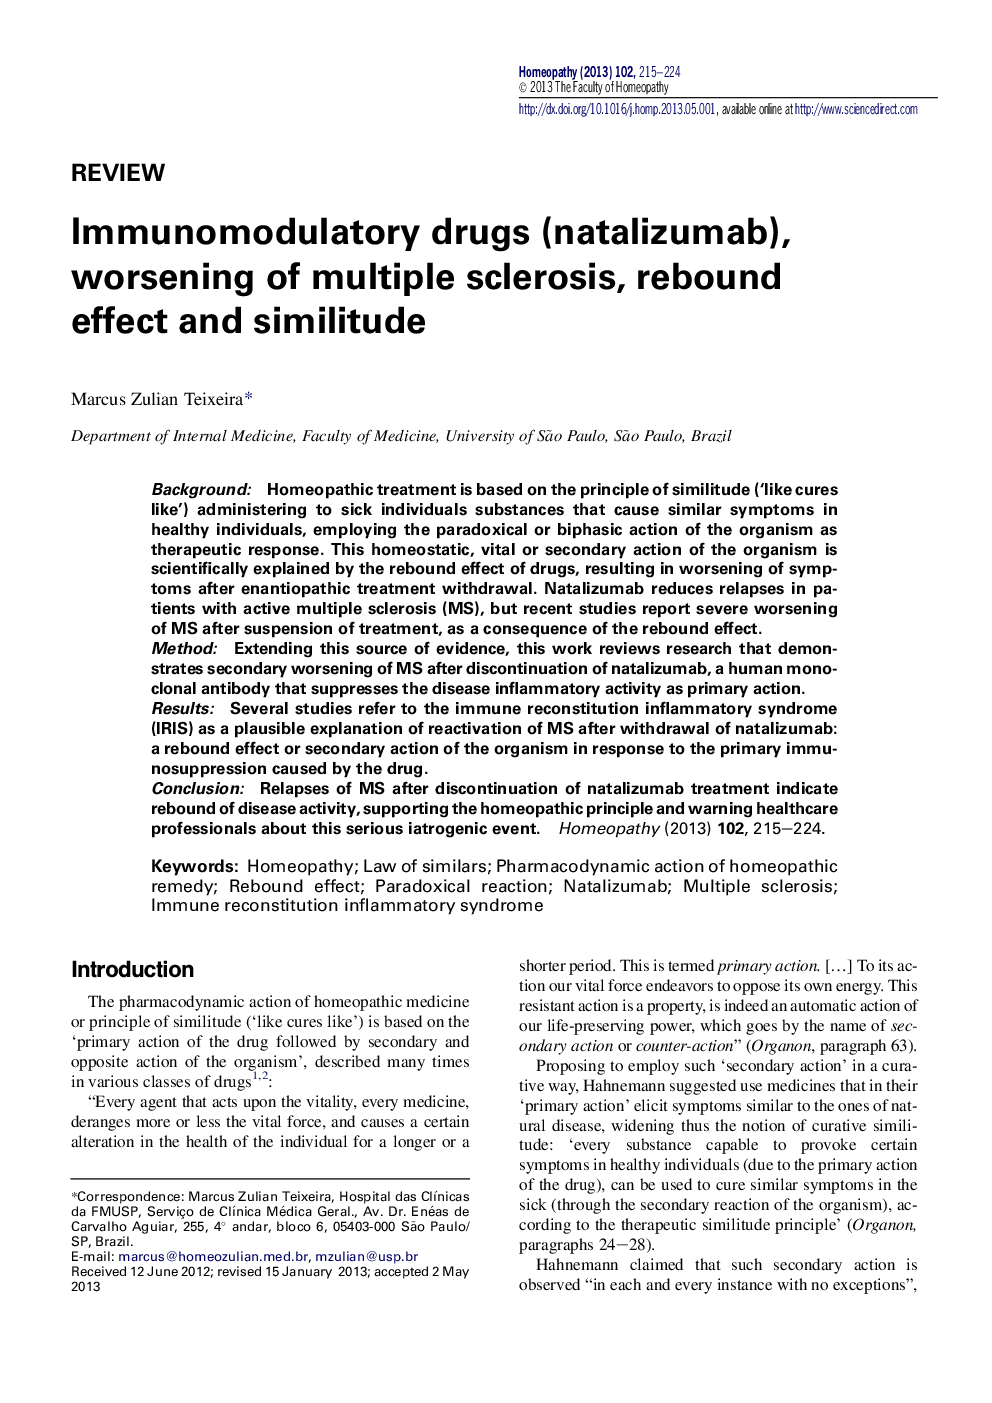 Immunomodulatory drugs (natalizumab), worsening of multiple sclerosis, rebound effect and similitude